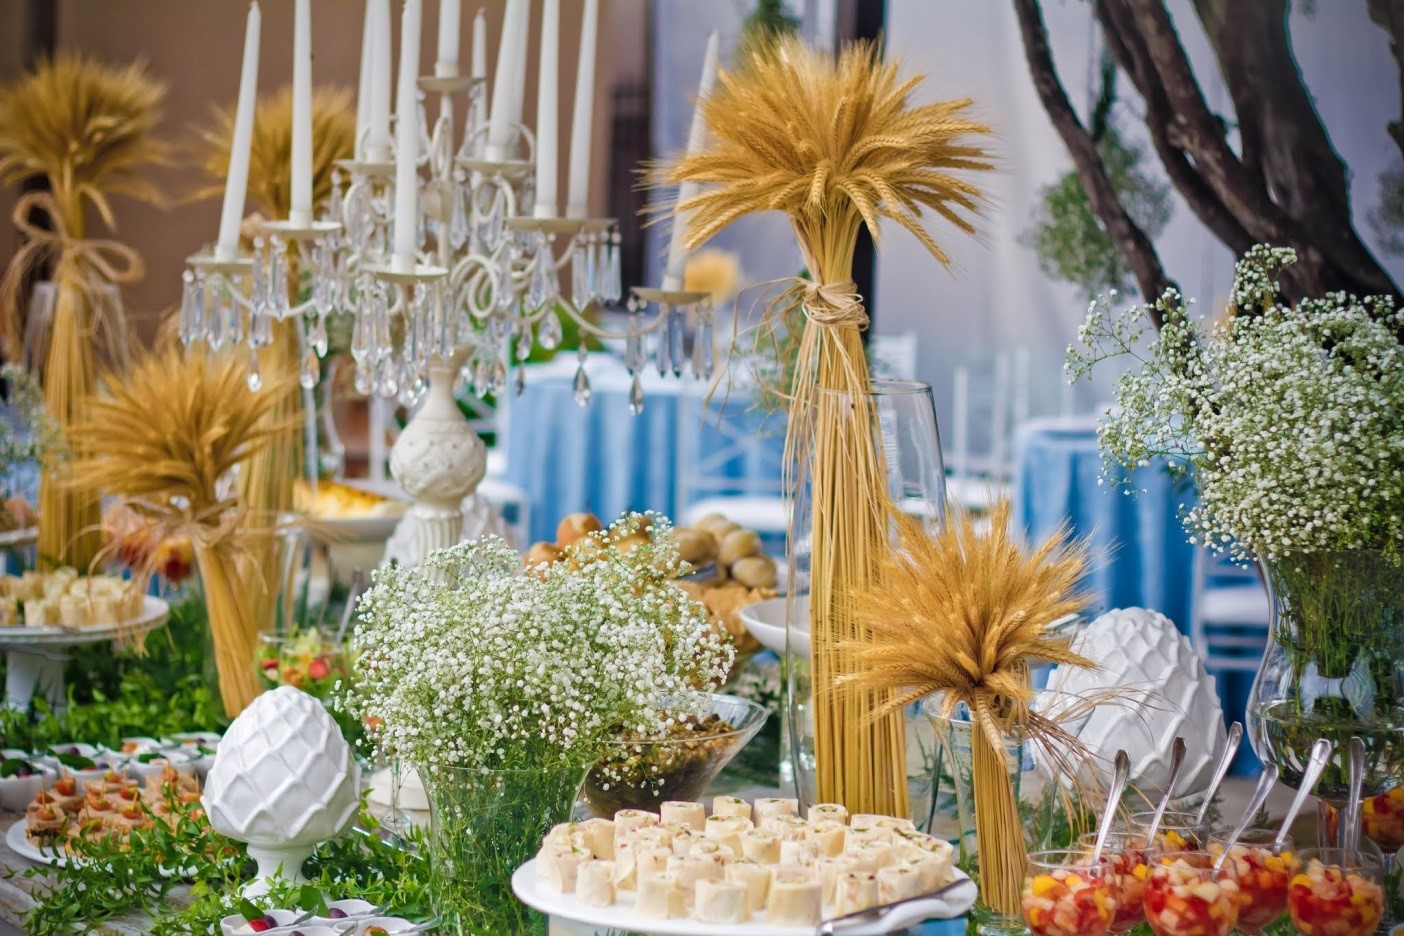 Arranjos de trigo decoraram a mesa do buffet e a cerimônia